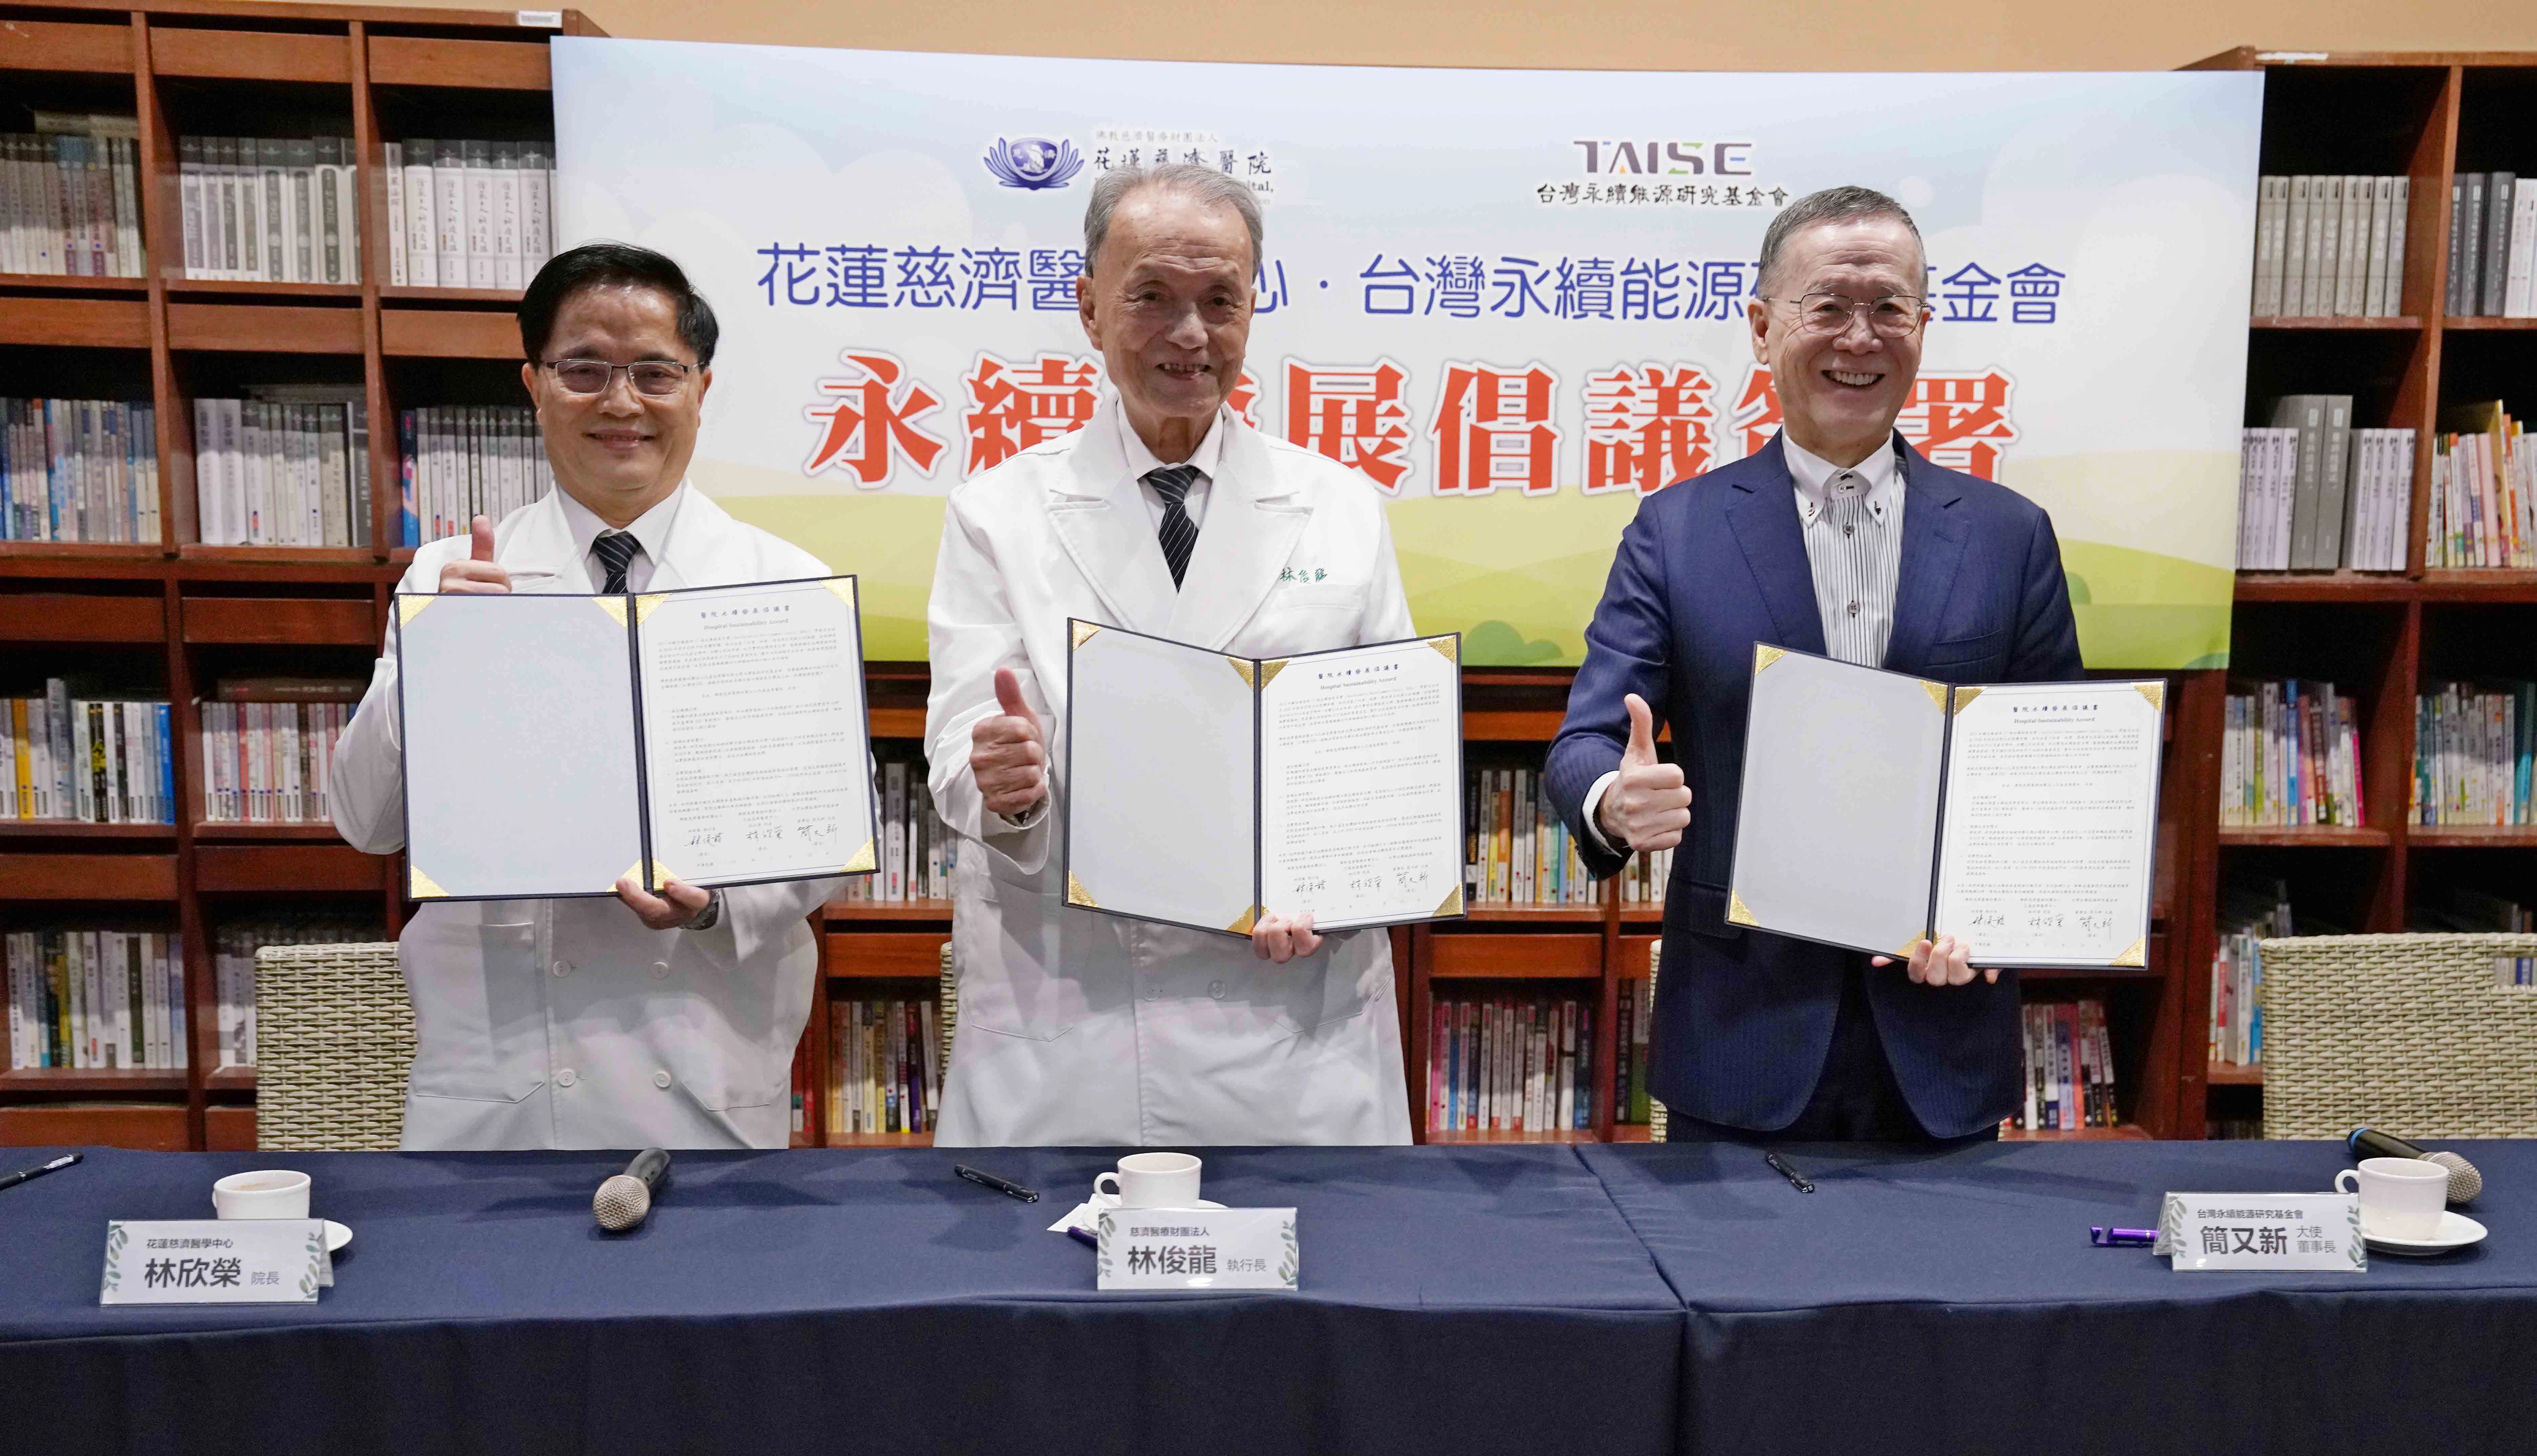 林欣榮院長(左起)、林俊龍執行長、簡又新董事長共同簽署「醫院永續發展倡議書」